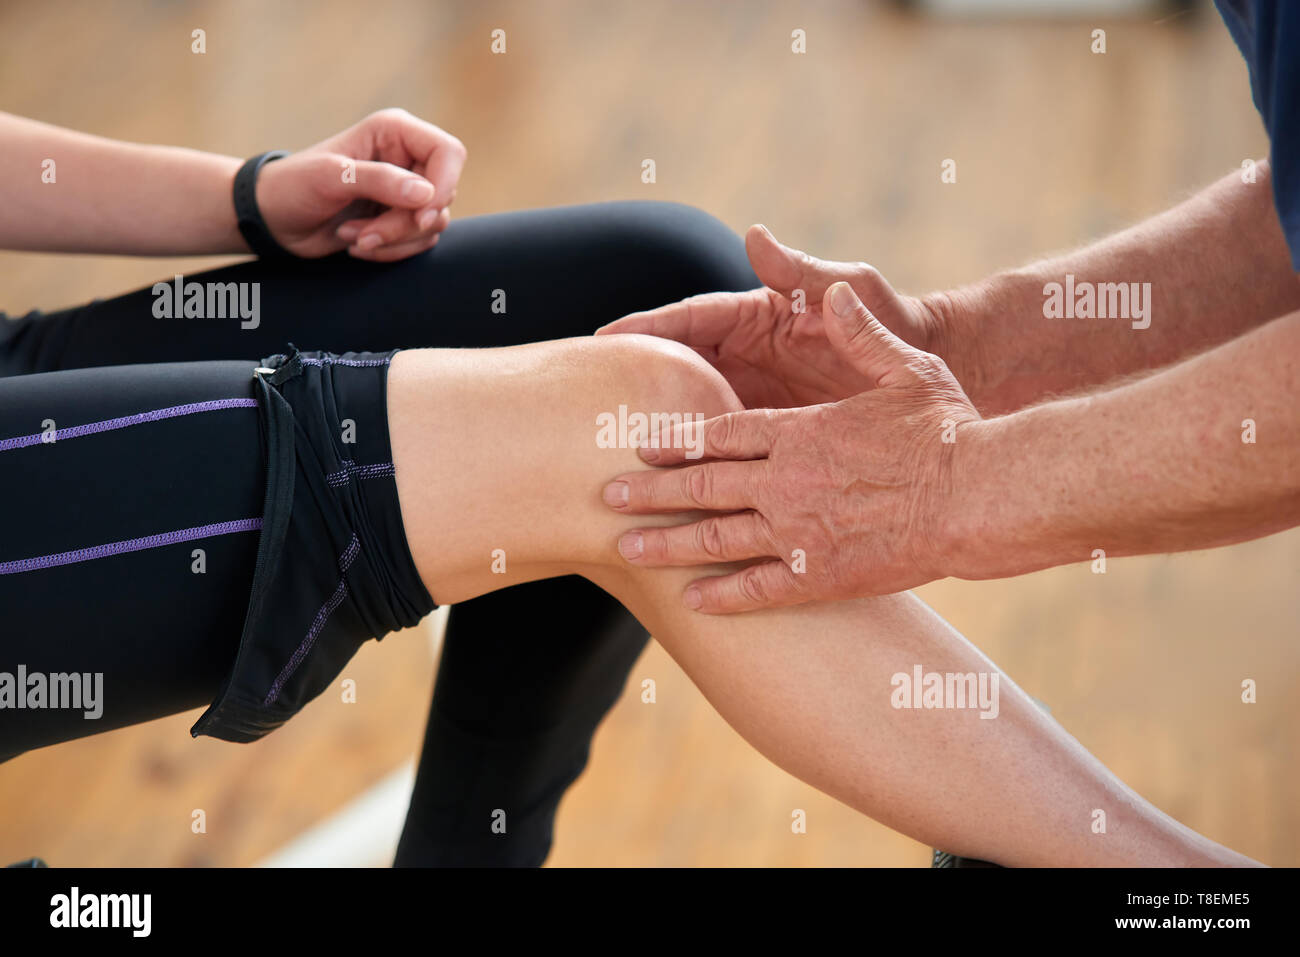 Muskel Belastung während des Trainings. Männliche Hände tun, eine Massage zu weiblichen Knie im Fitnessstudio in der Nähe. Die Behandlung von Muskelkater nach dem Sport ausüben. Stockfoto